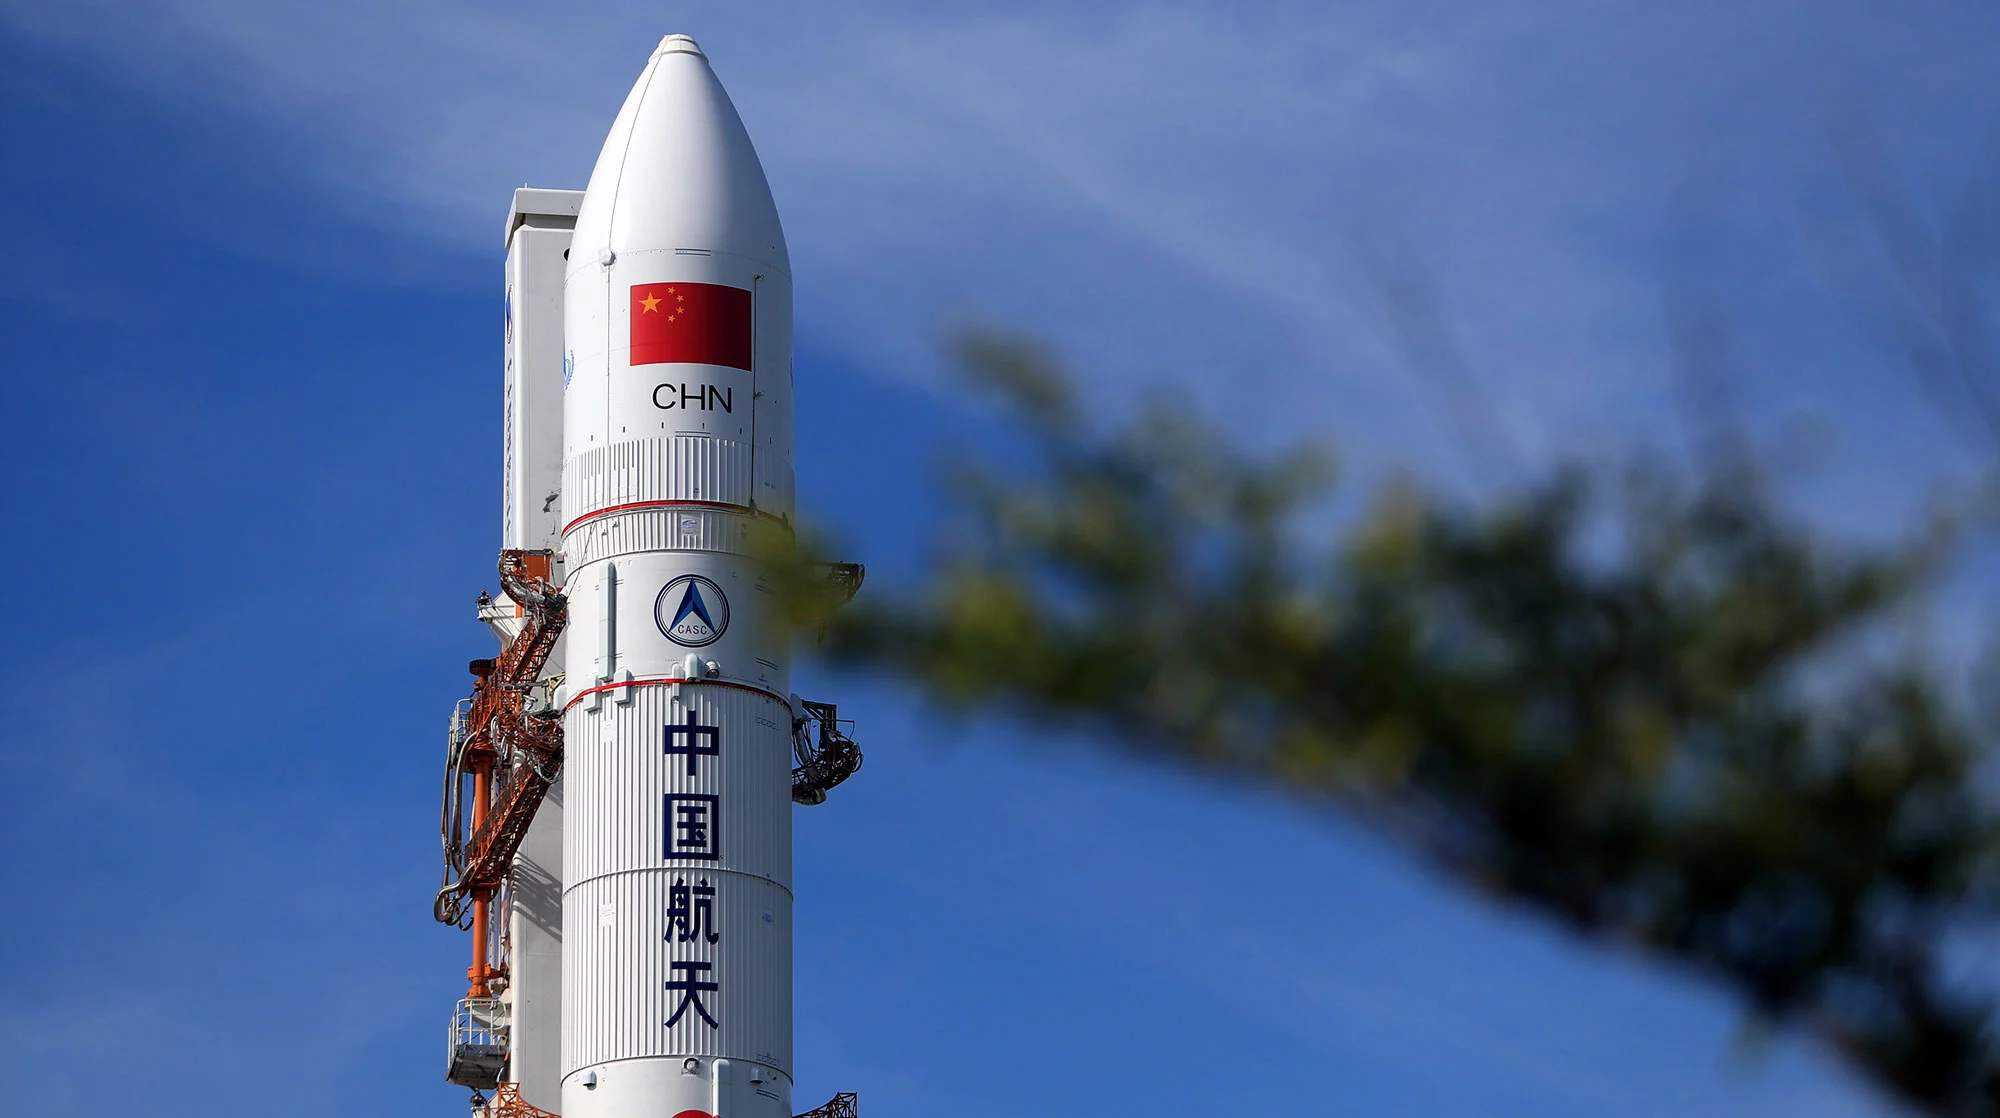 缺发动机缺火箭,美欧航天面临尴尬局面,为何不使用中国火箭?